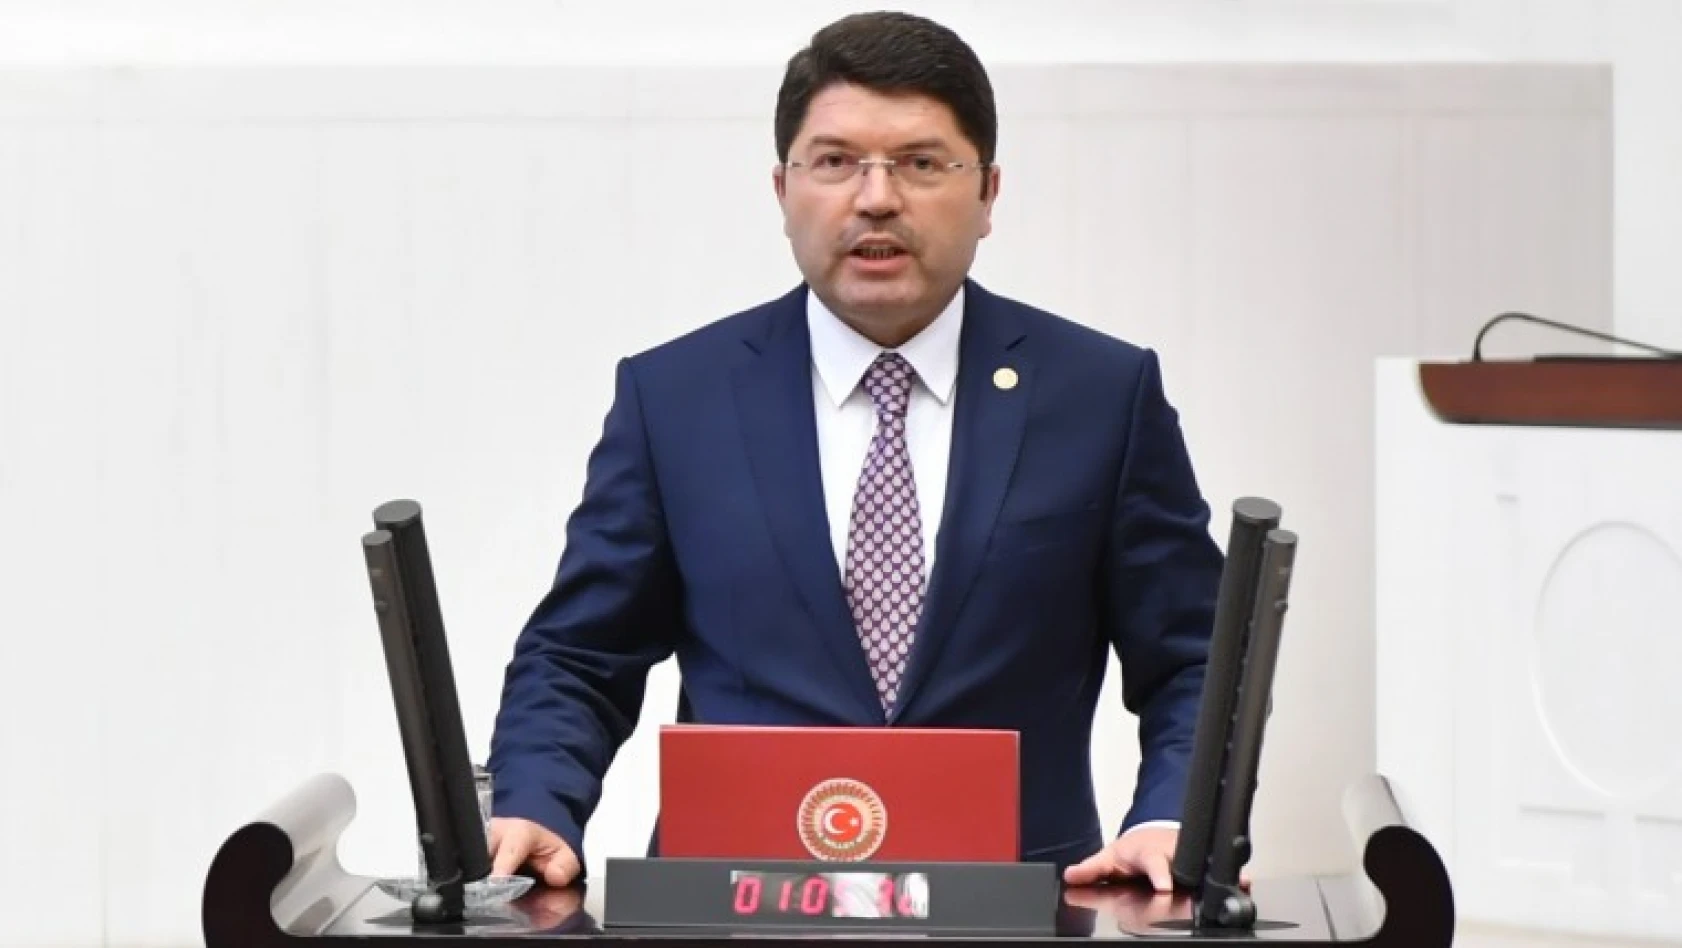 Tunç, AK Parti Siyasi Ve Hukuki İşler Başkan Yardımcılığına yeniden atandı